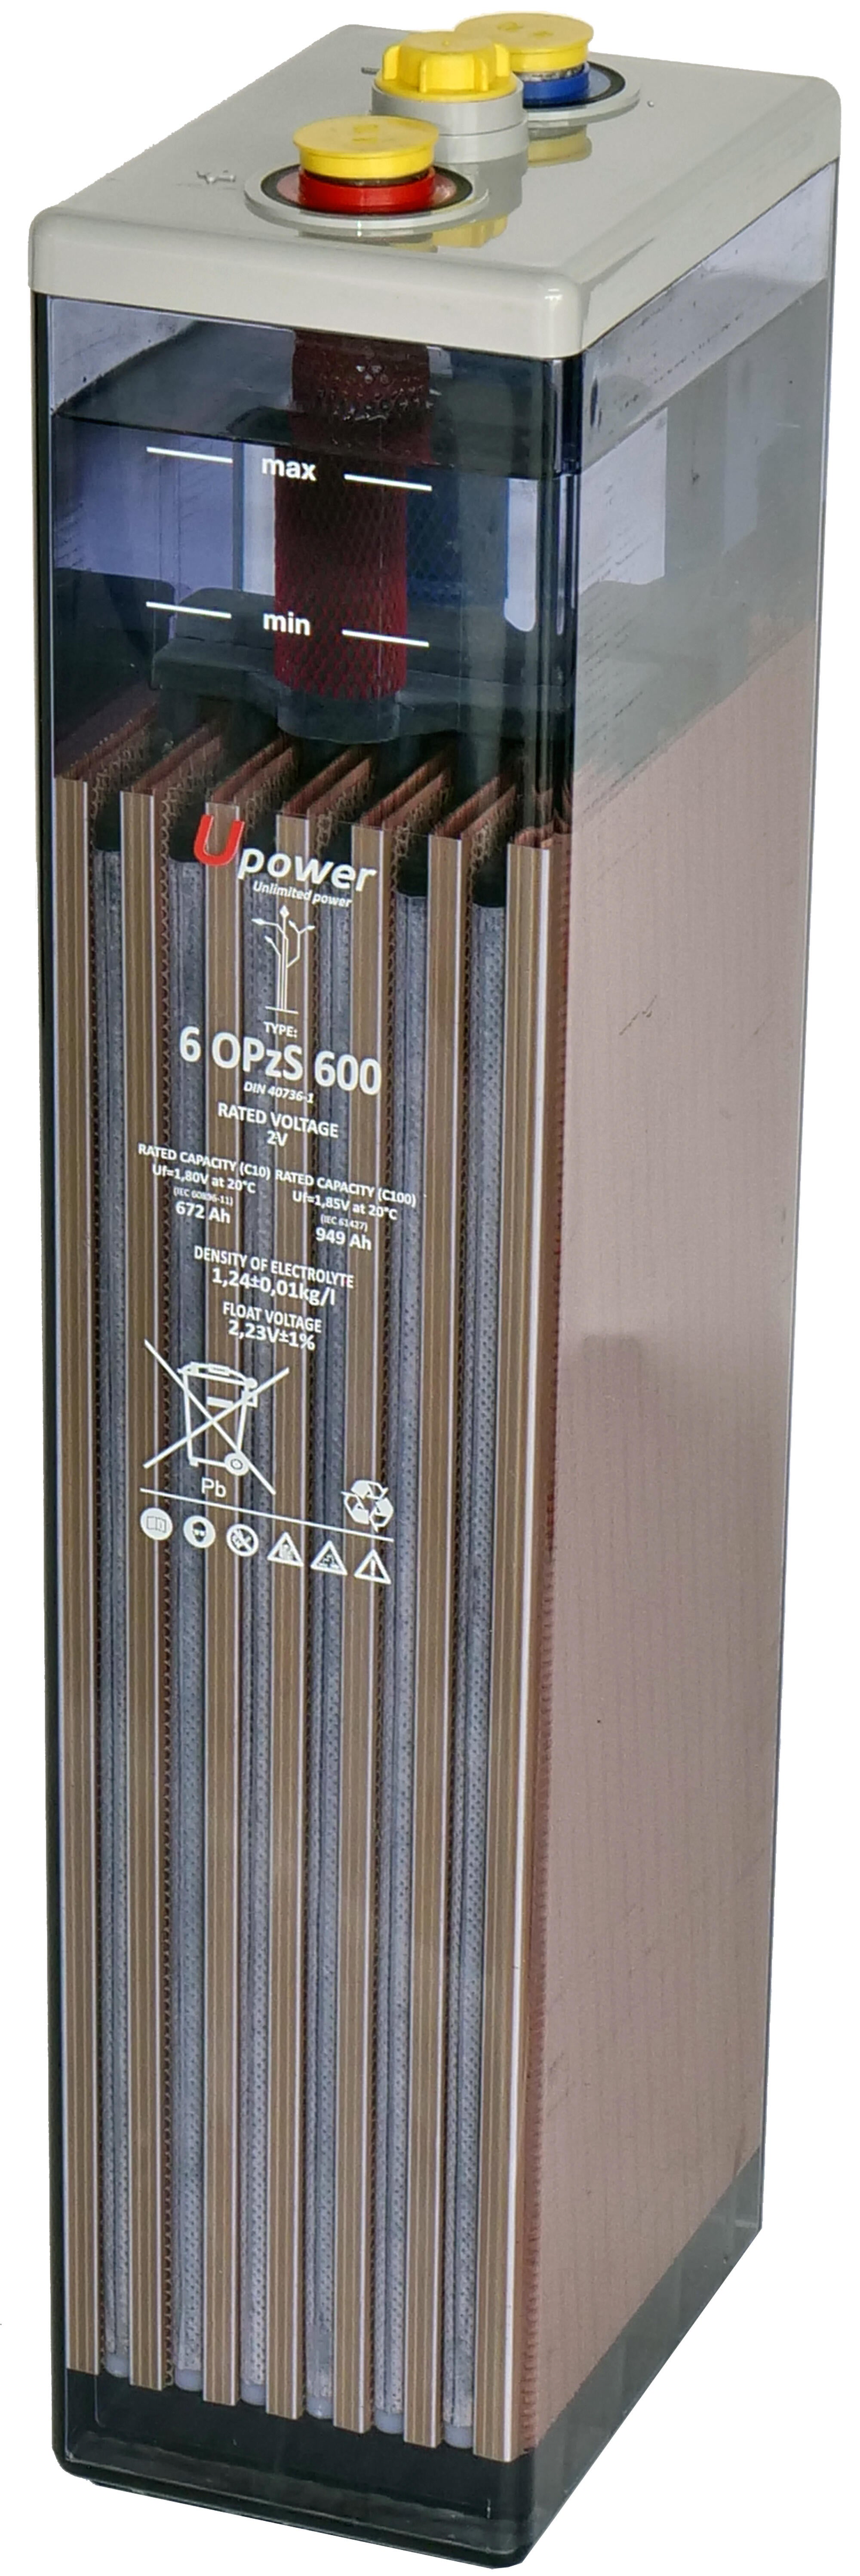 Batería solar estacionaria u-power 6 opzs 600 2v c100 1095ah